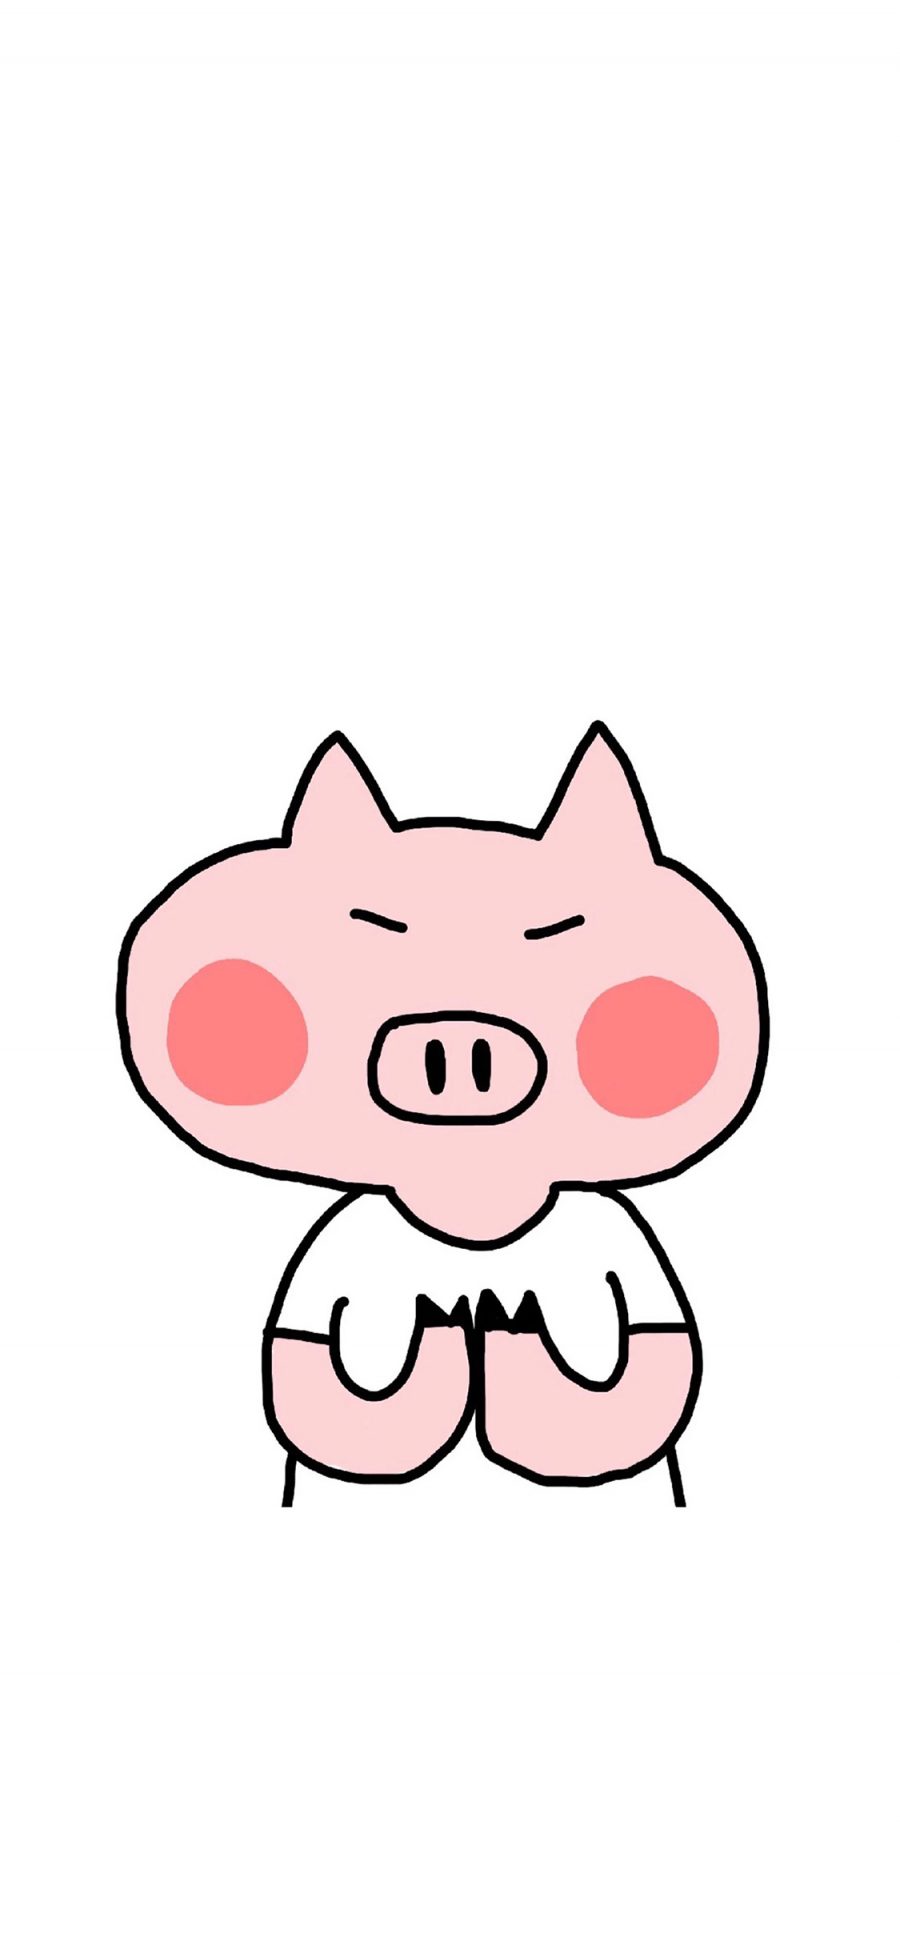 [2436×1125]小猪 卡通 简笔画 粉色 可爱 苹果手机动漫壁纸图片